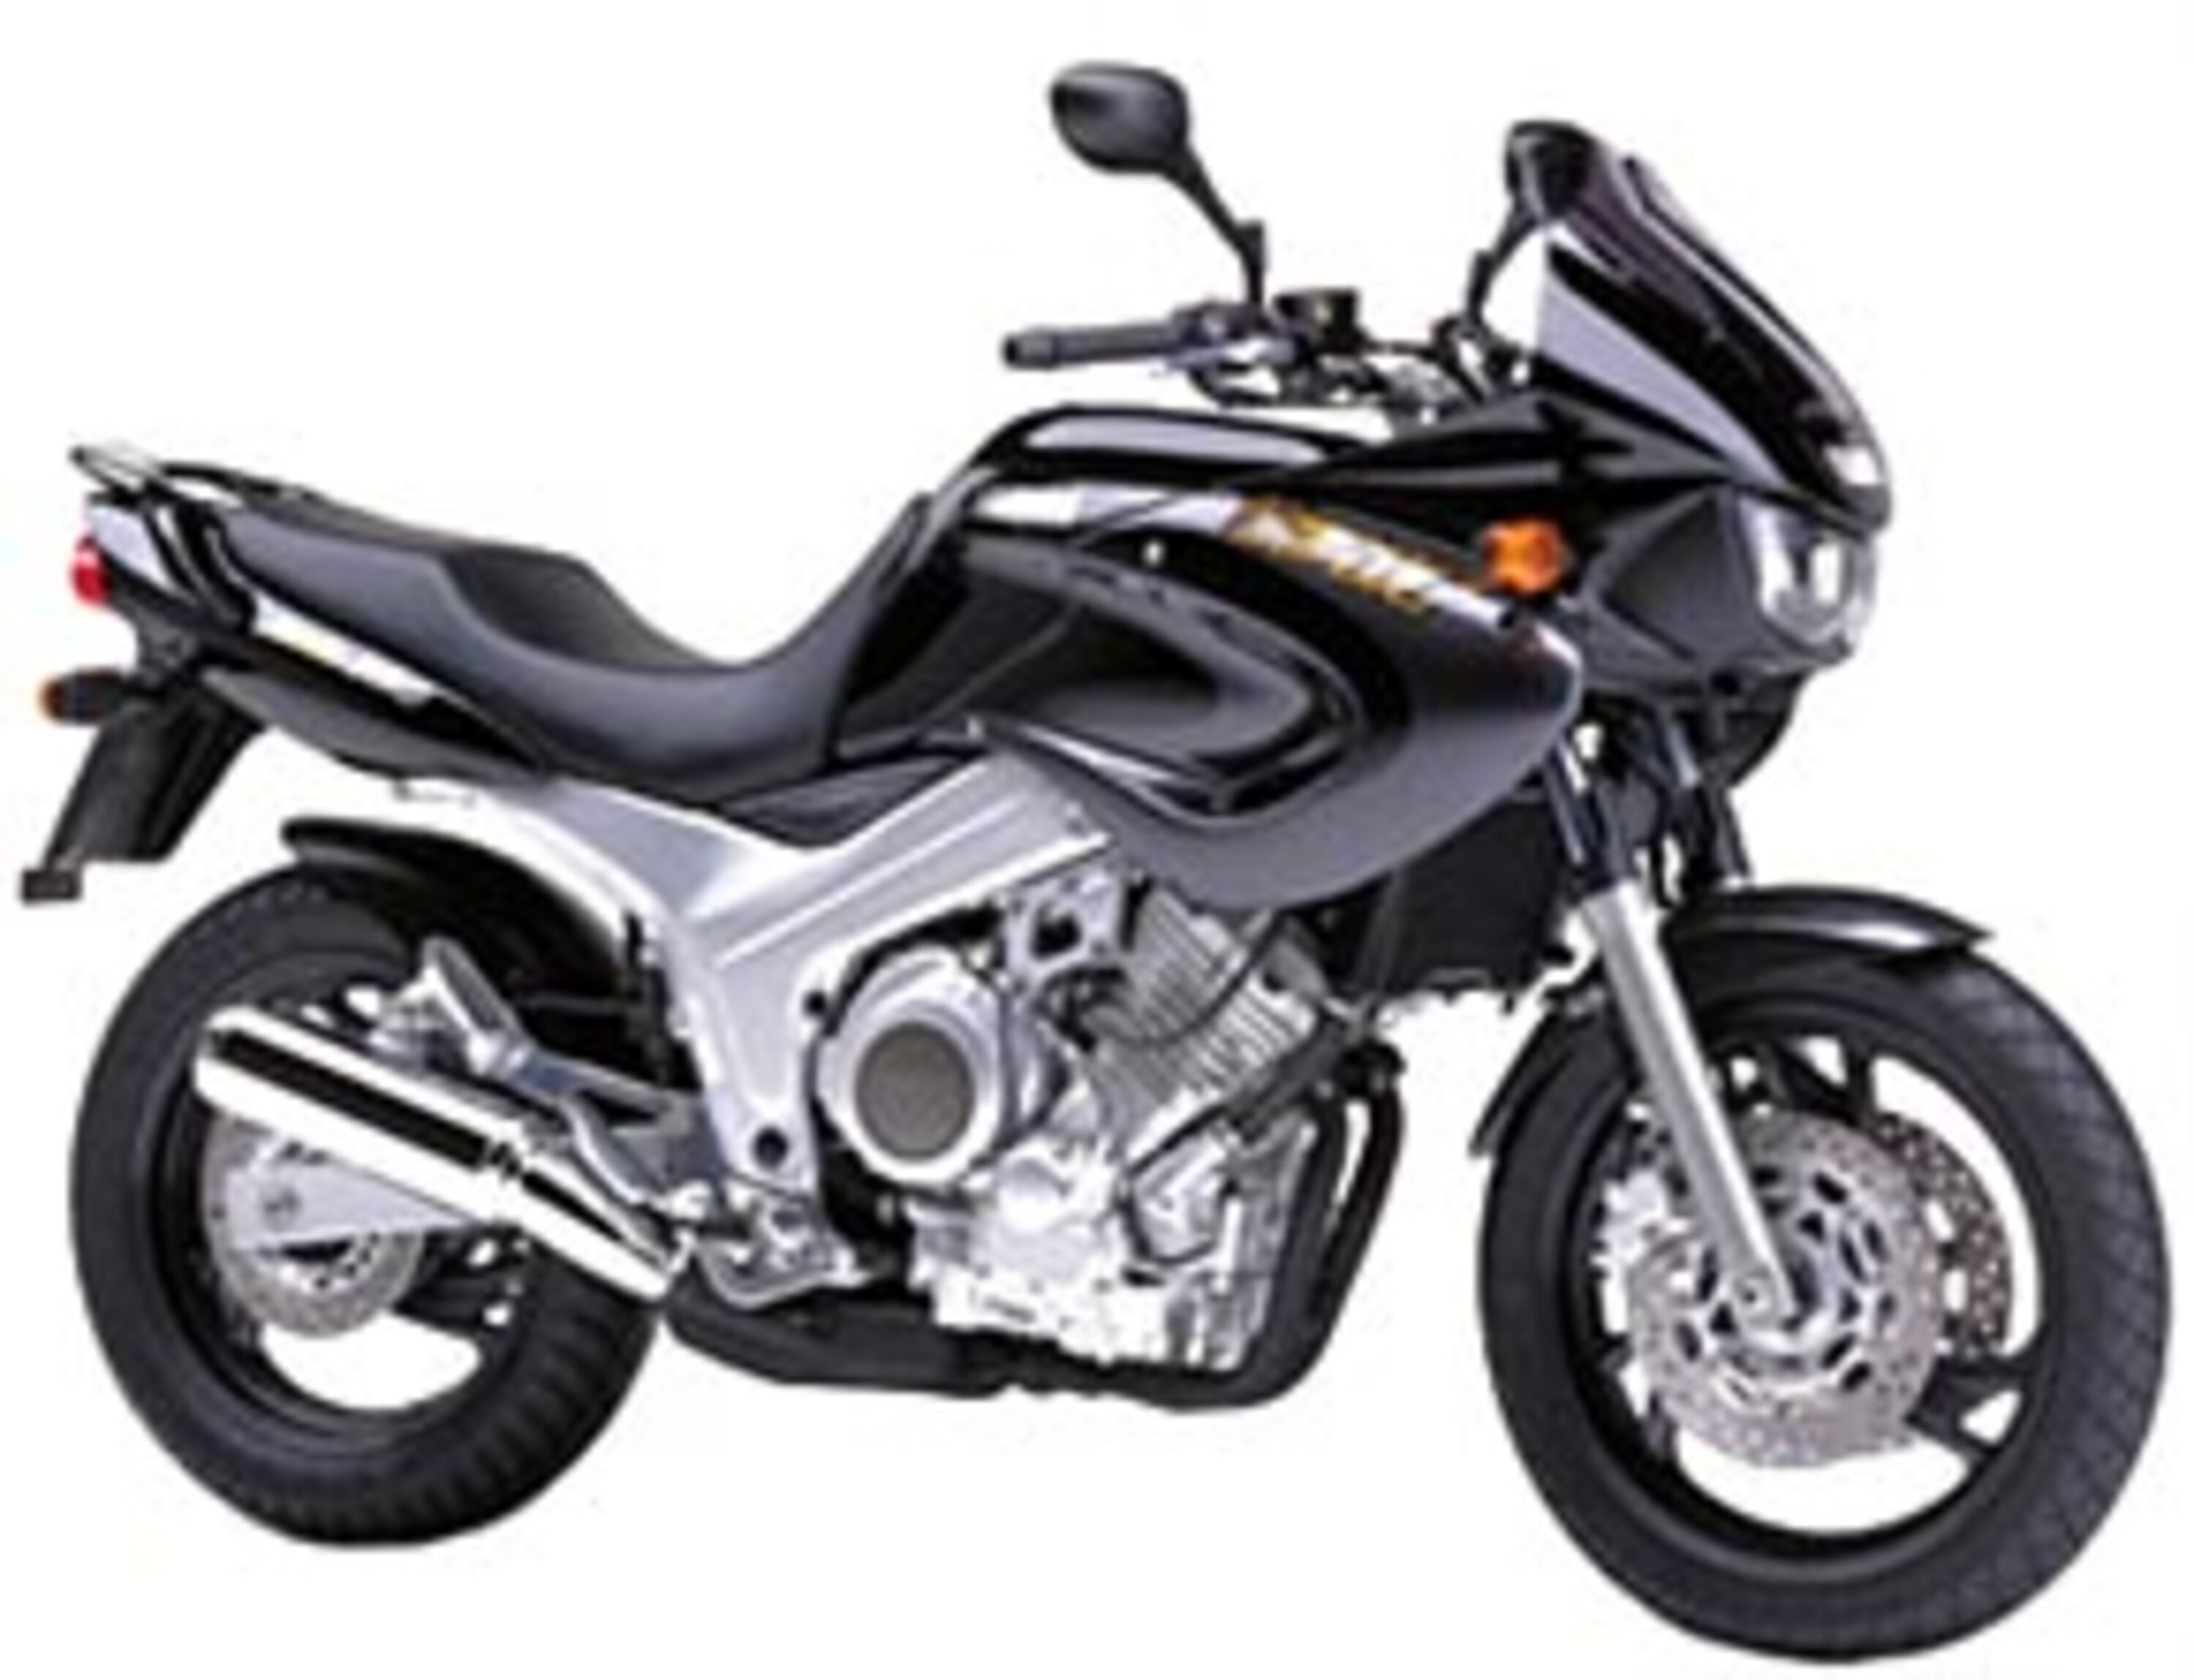 Yamaha TDM 850 TDM 850 (1996 - 01)